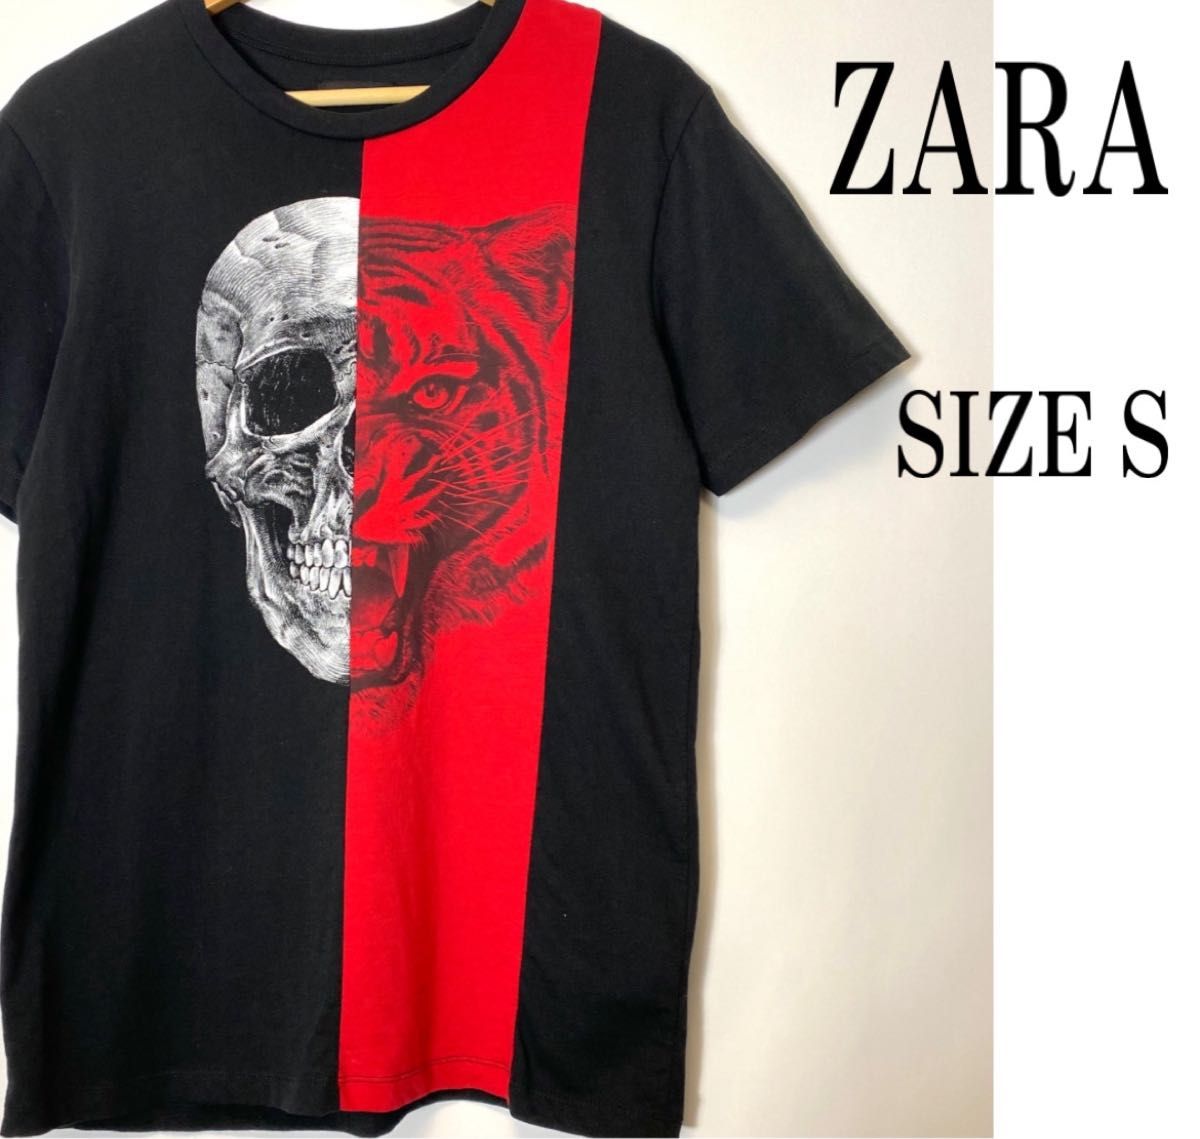 ZARA ザラ 半袖 髑髏 スカルプリント Tシャツ ブラック 黒 S